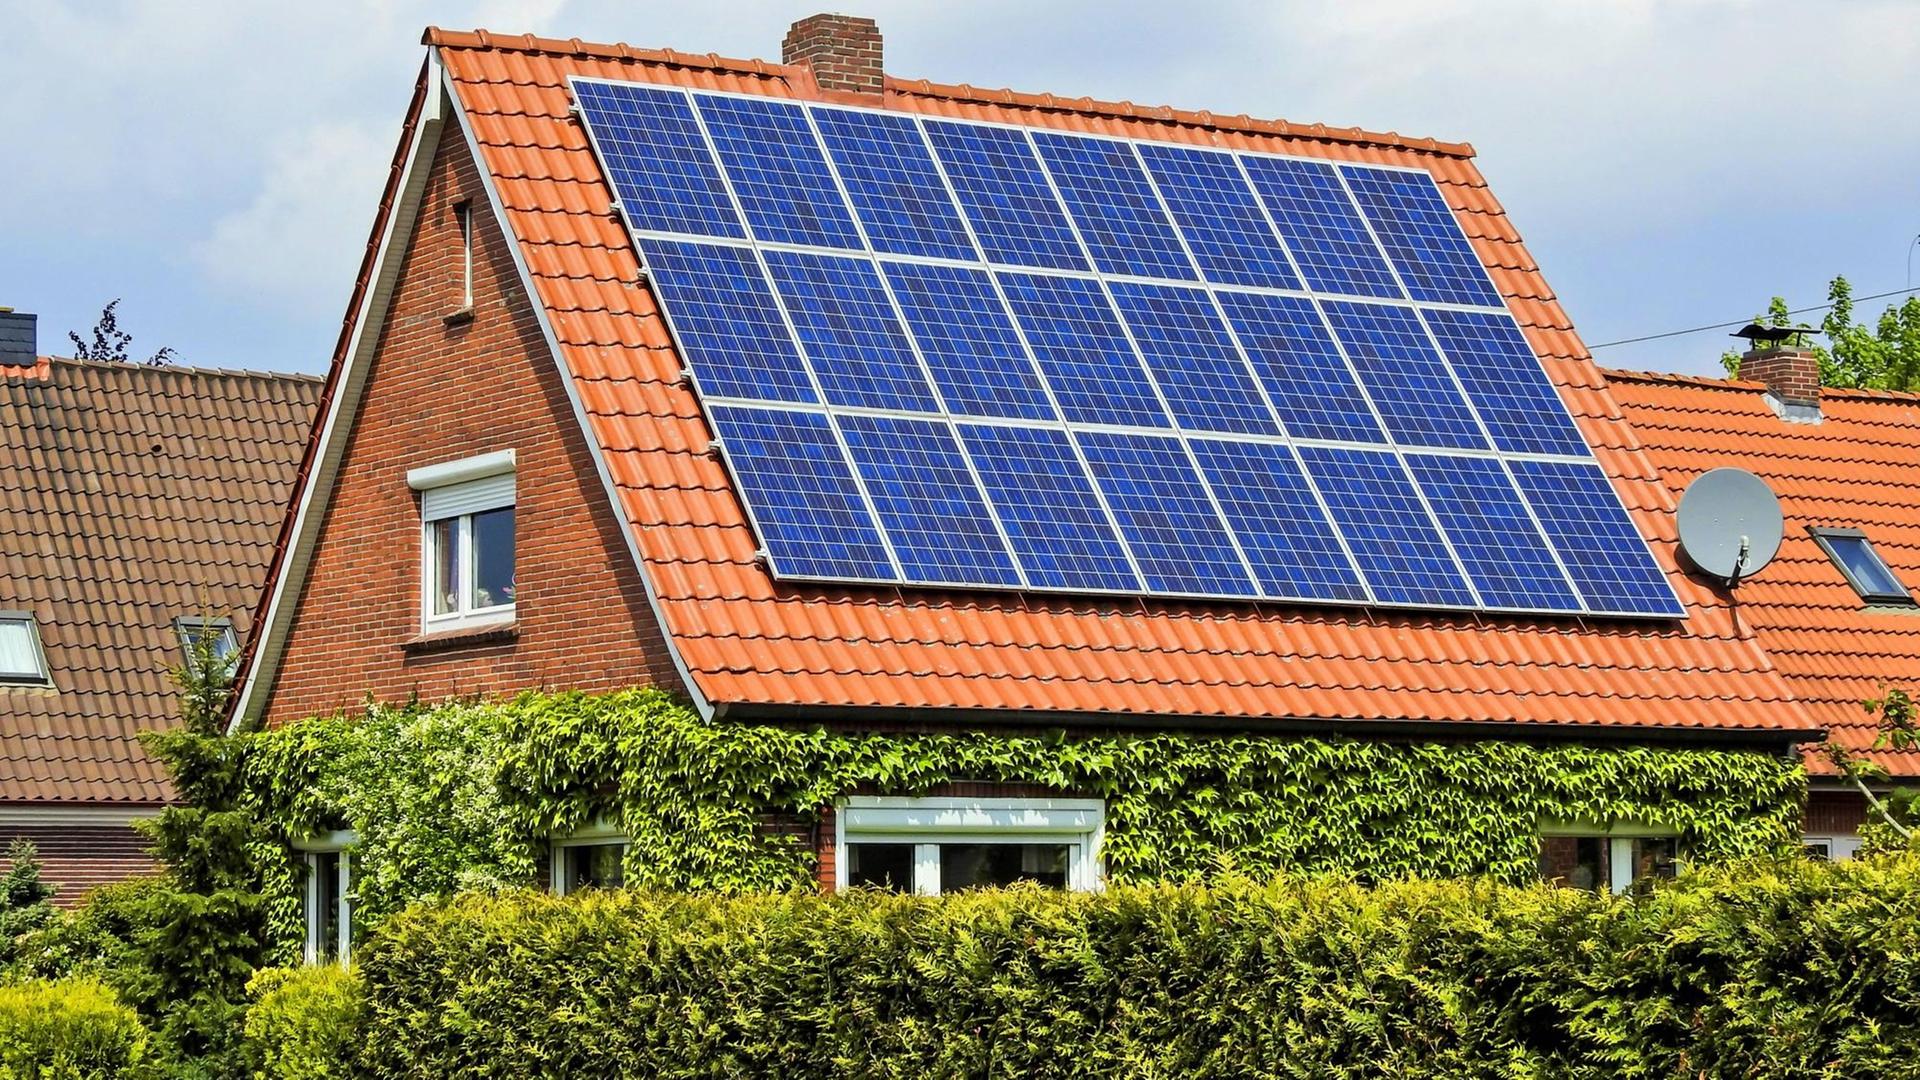 Solarzellen auf einem Einfamilien-Wohnhaus in Niedersachsen.